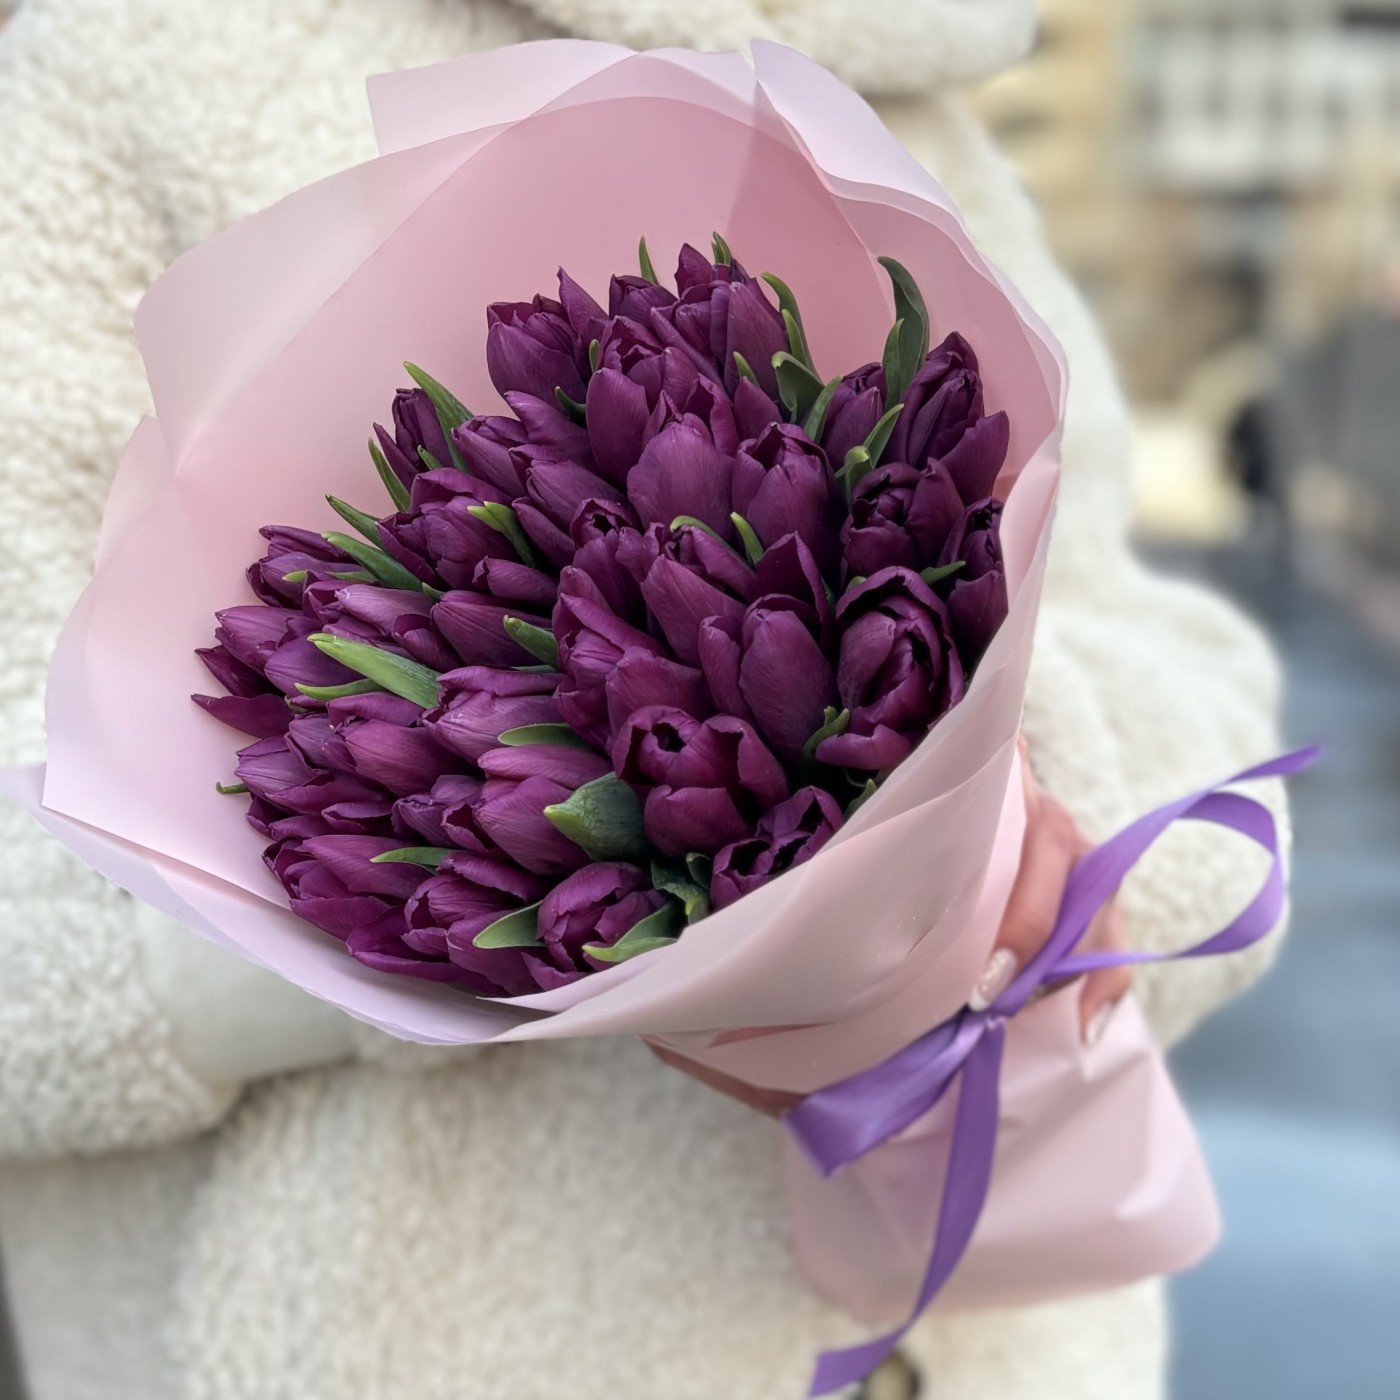 35 фиолетовых тюльпанов